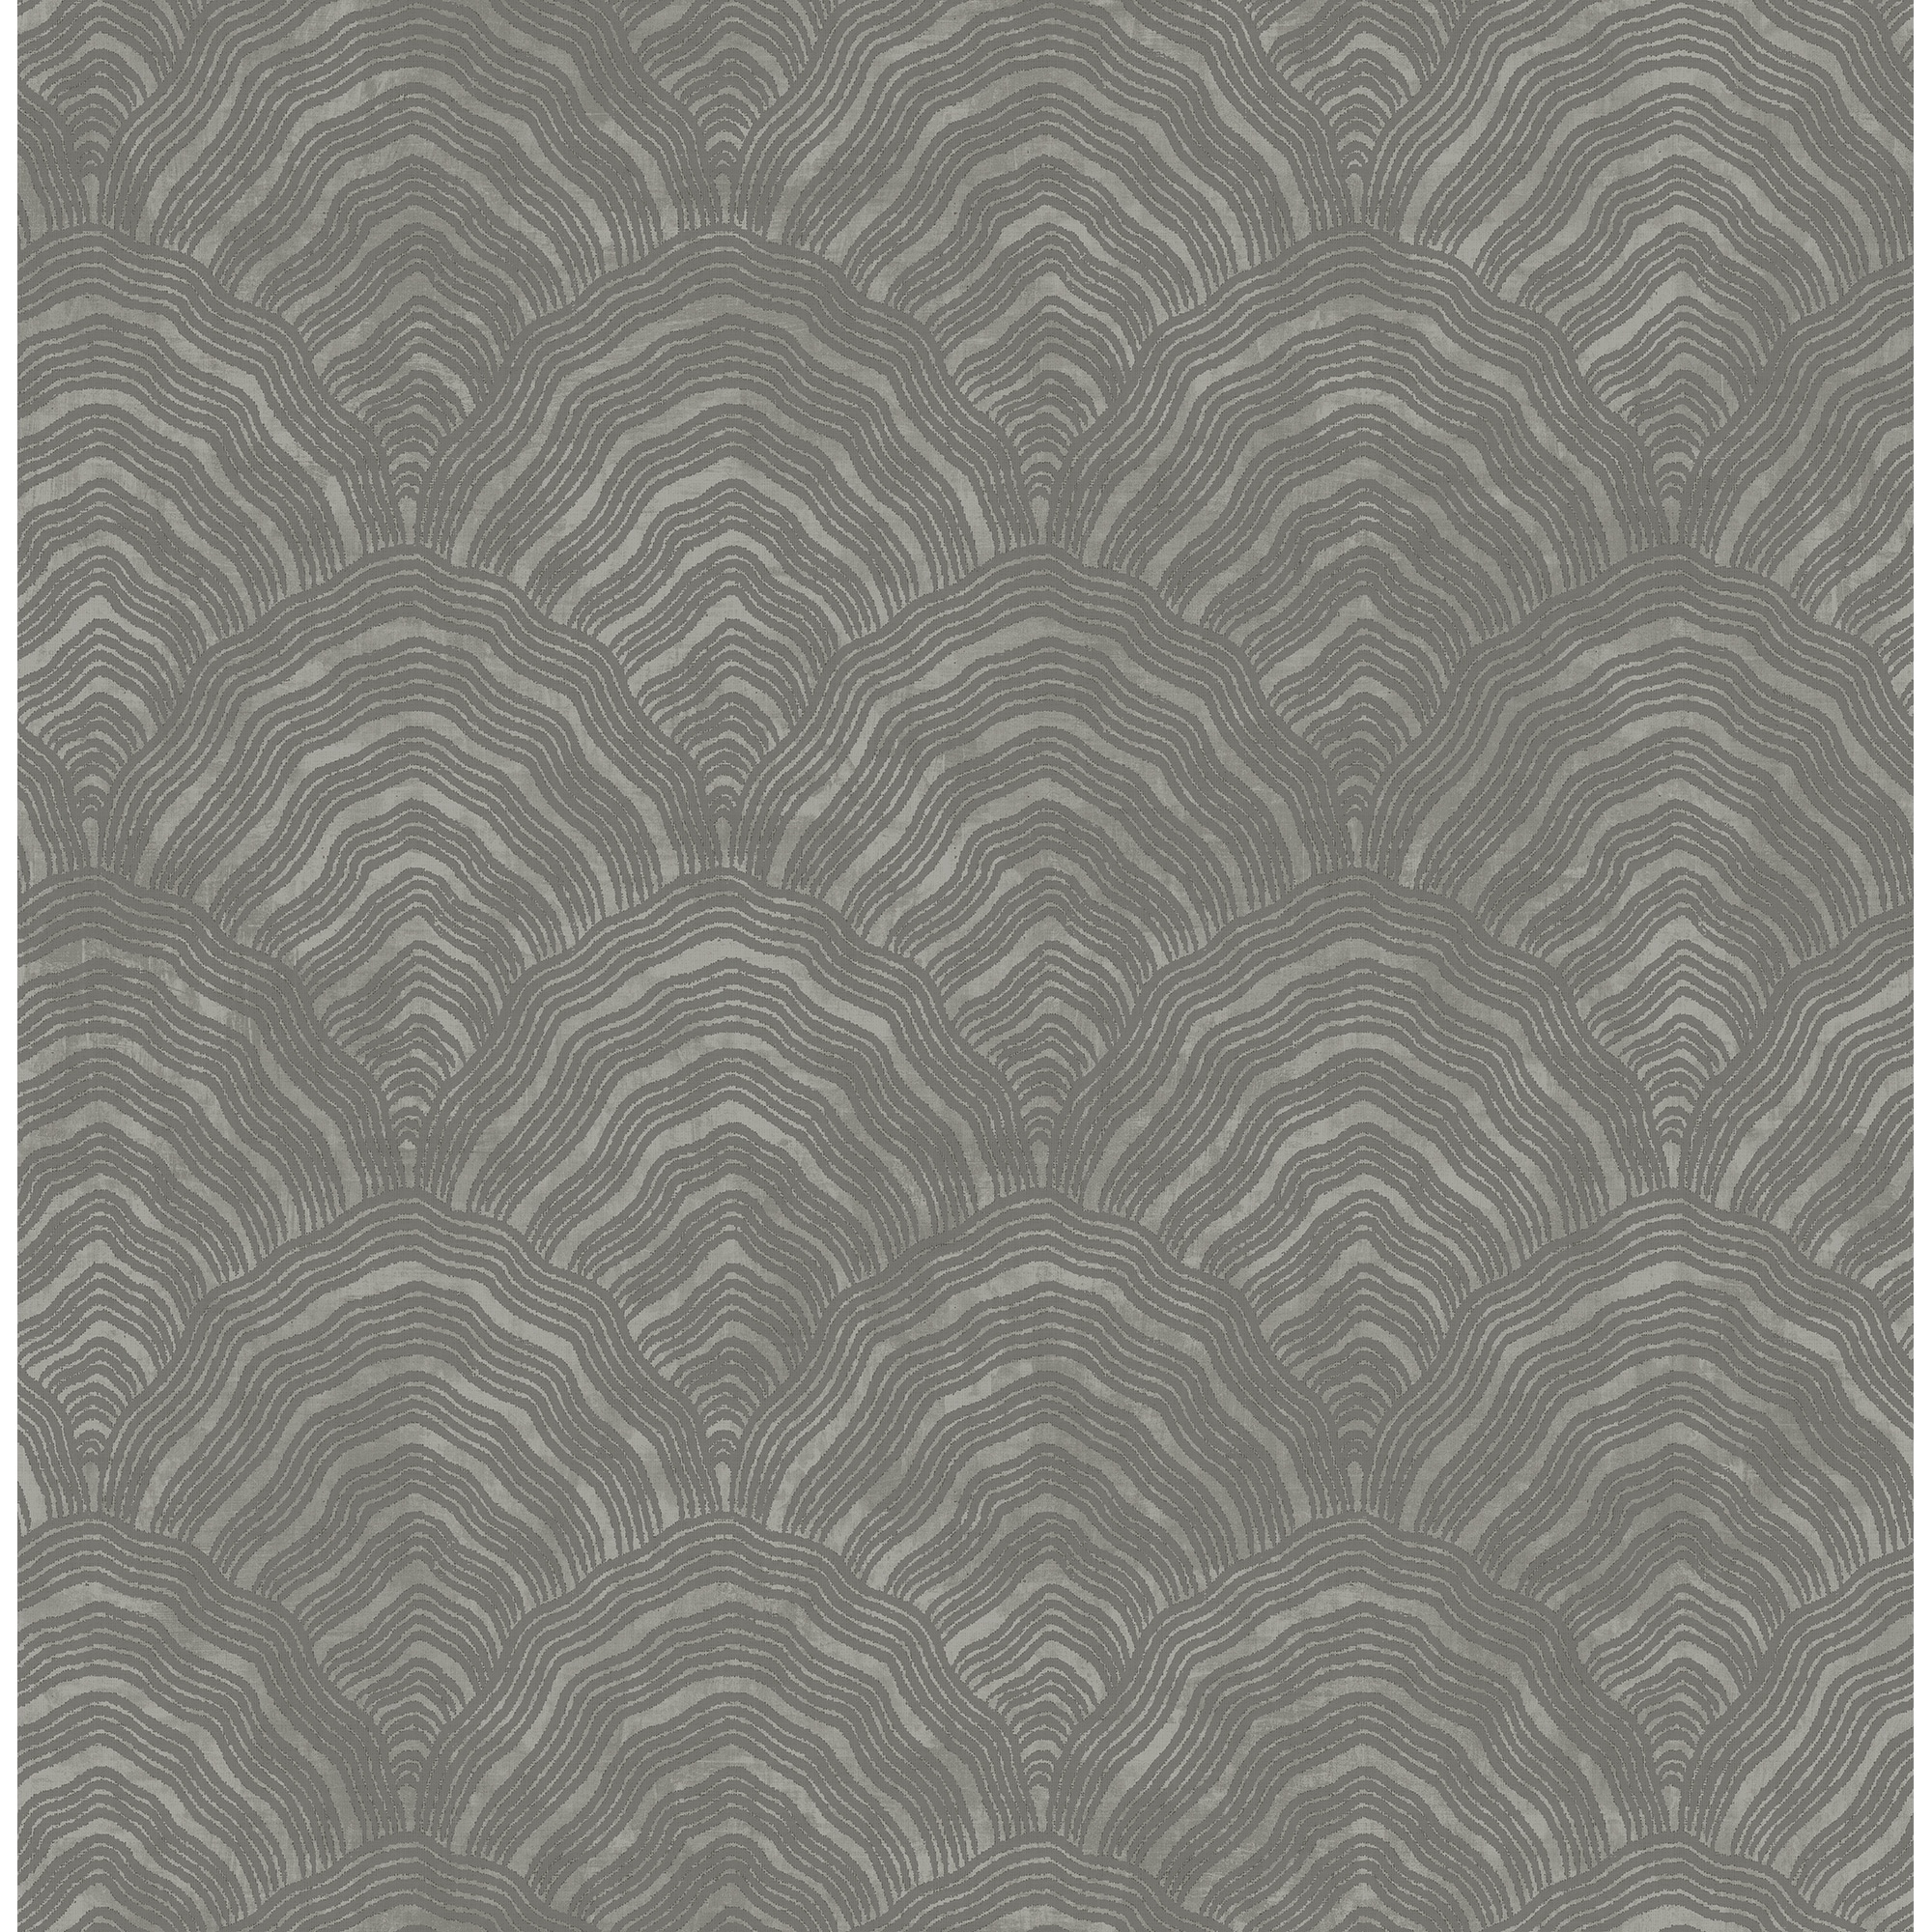 Metallic Floral Stripe Wallpaper, 32.81 feet long X 20.5 inchs Wide,  Metallic Pearl, Powder Blue, & Blush - Bed Bath & Beyond - 30270660